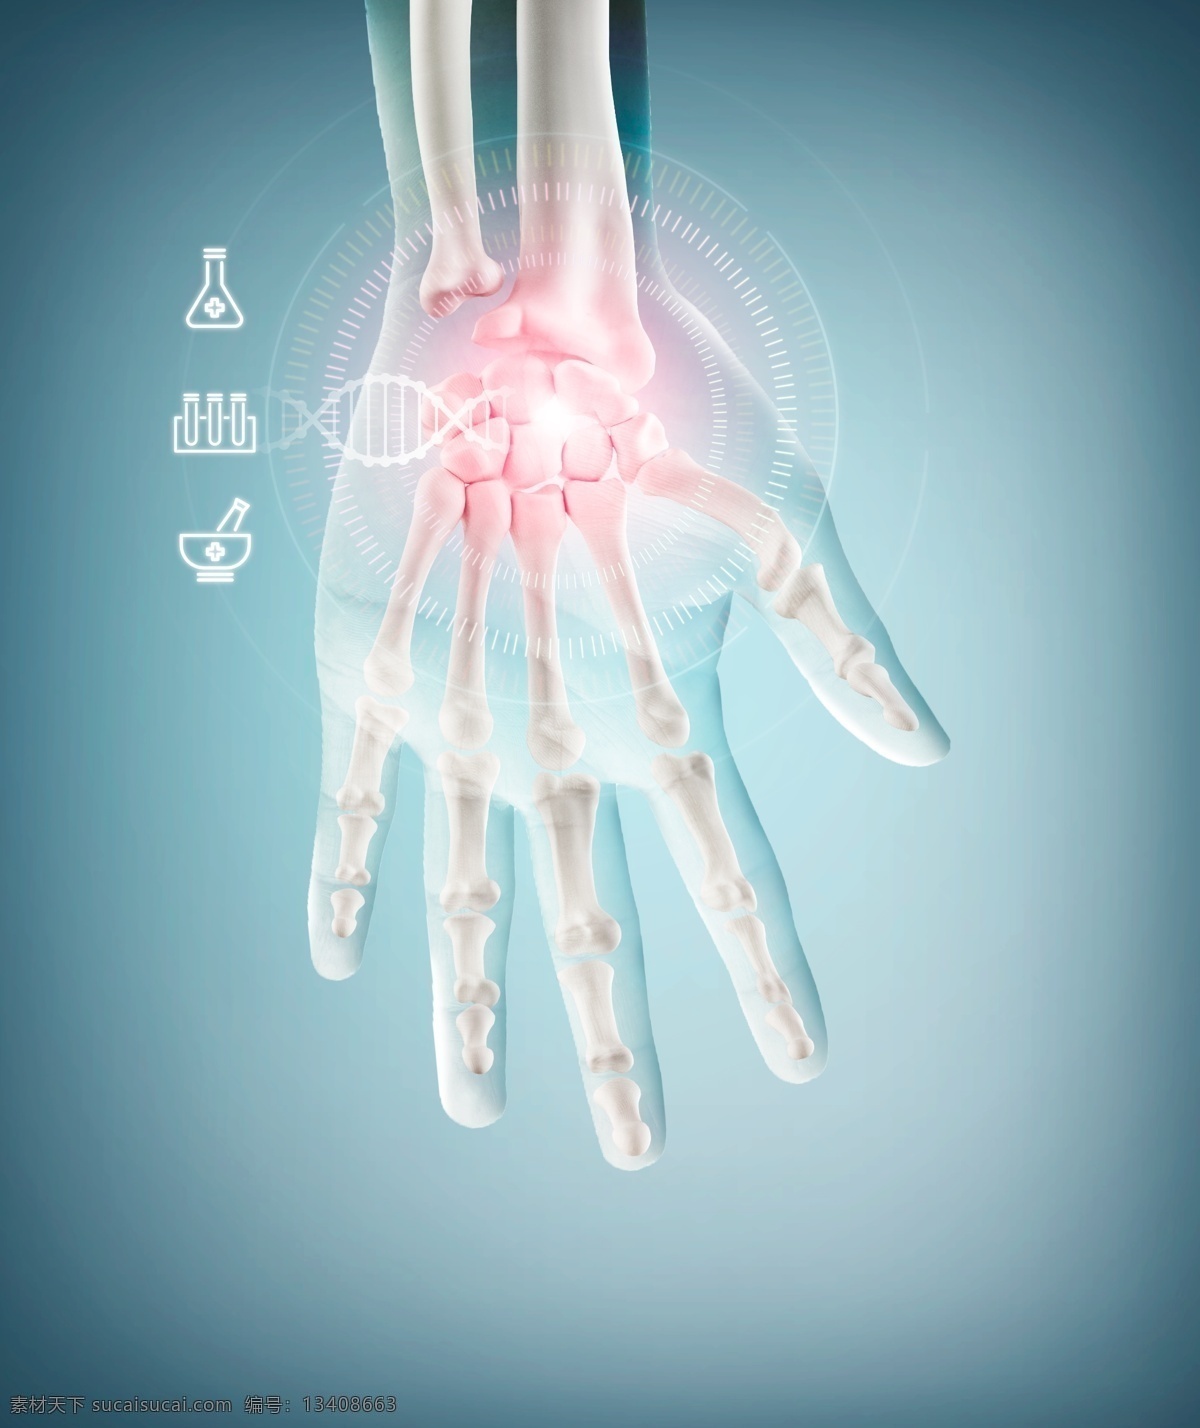 未来 科技 医学 手部 试验 展板 骨骼 科技海报 创意素材 医生 手 人体器官 透视 x光 海报 医学技术 商来海报 商学医学 分子科技 国外医学